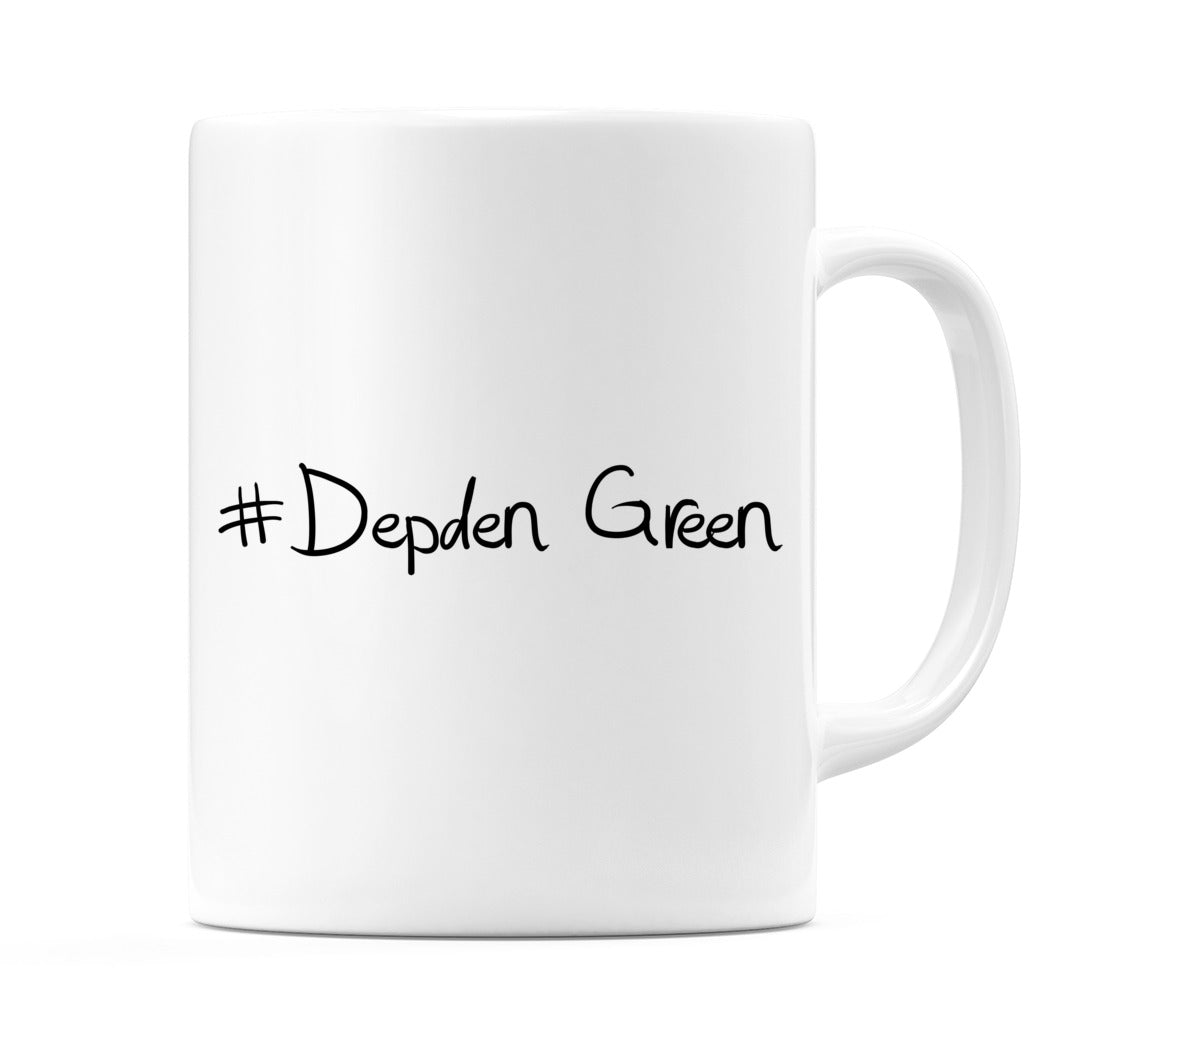 #Depden Green Mug